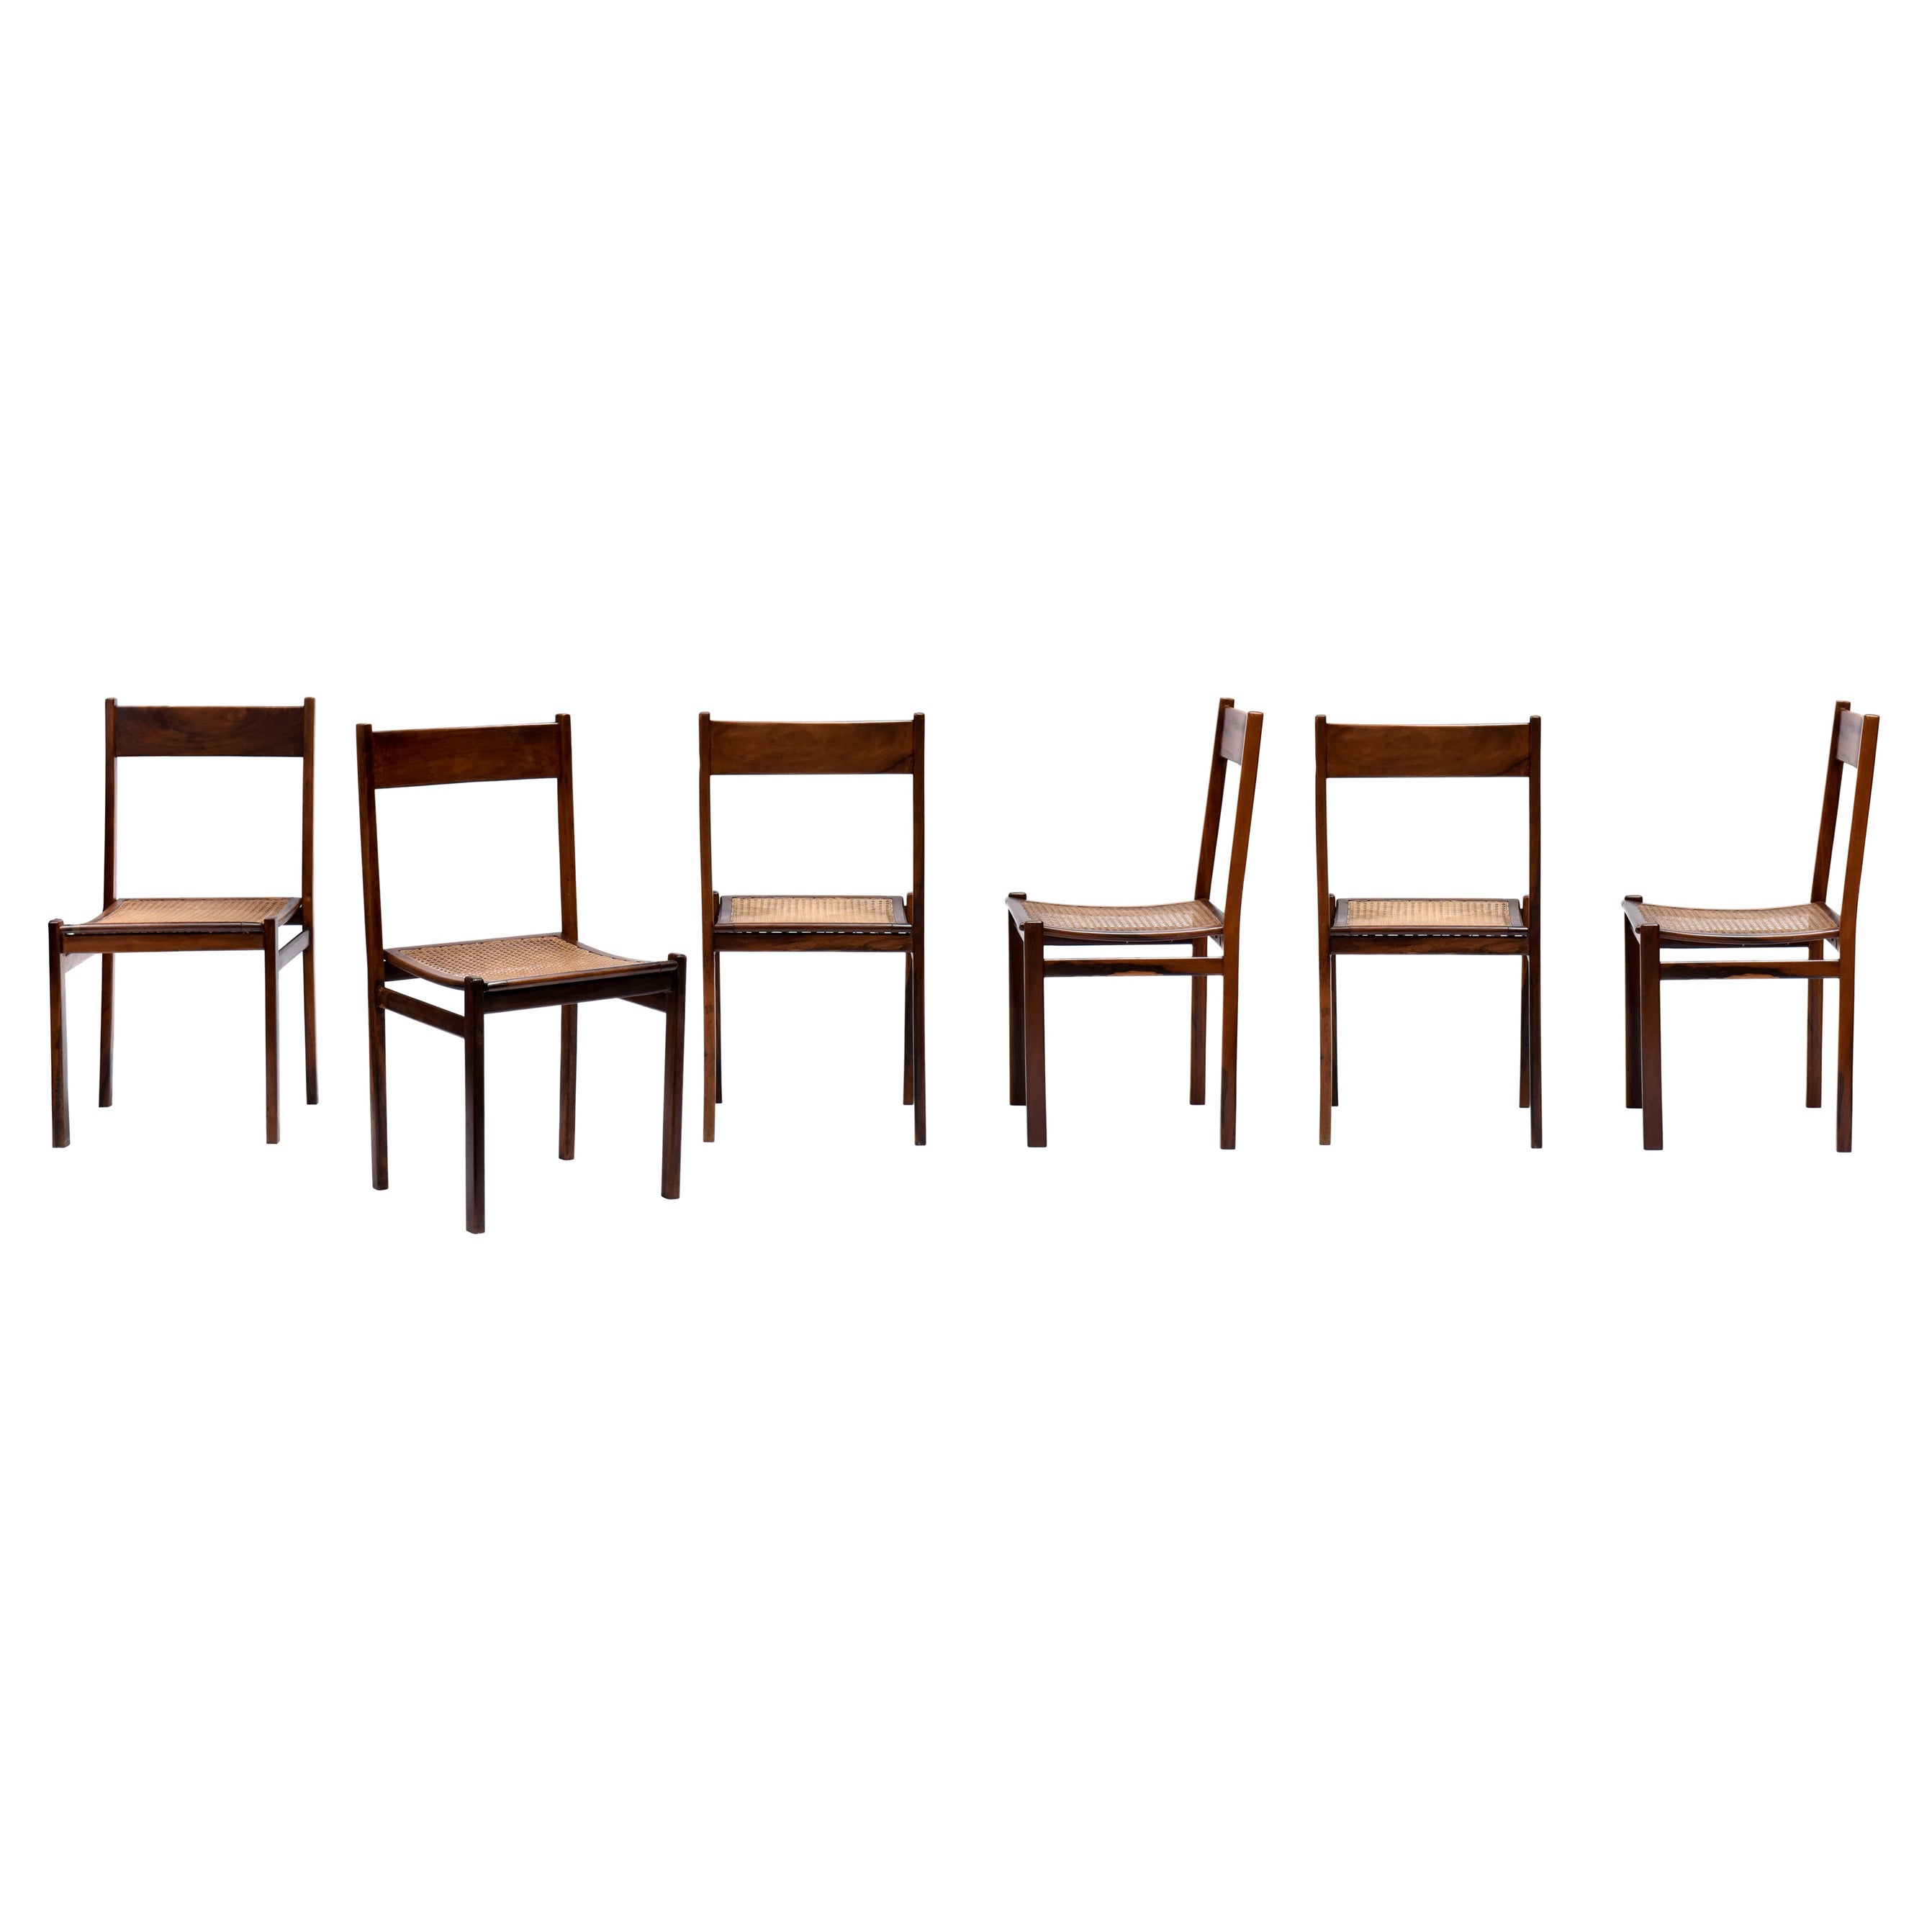 Set of 6 Chairs in Brazilian Wood by Joaquim Tenreiro